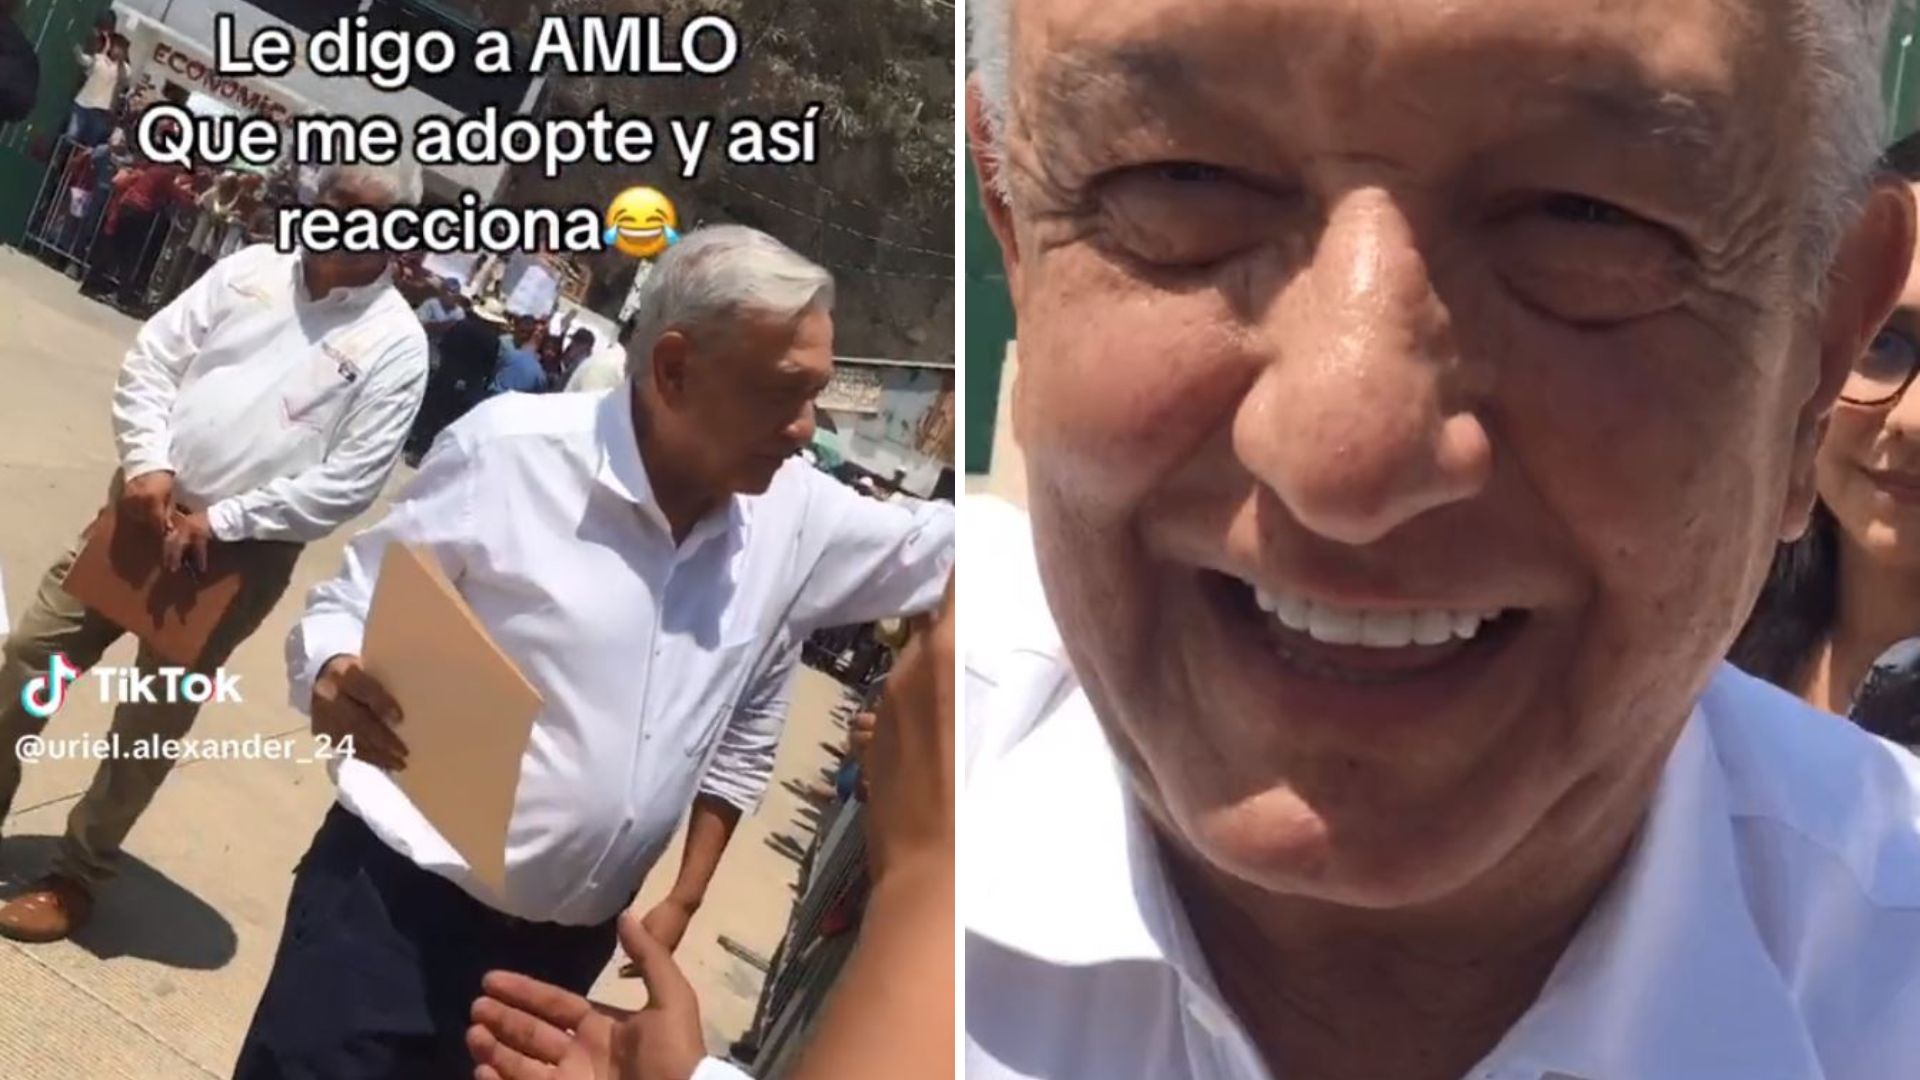 “Andrés, adóptame”: petición de joven a AMLO se vuelve viral 